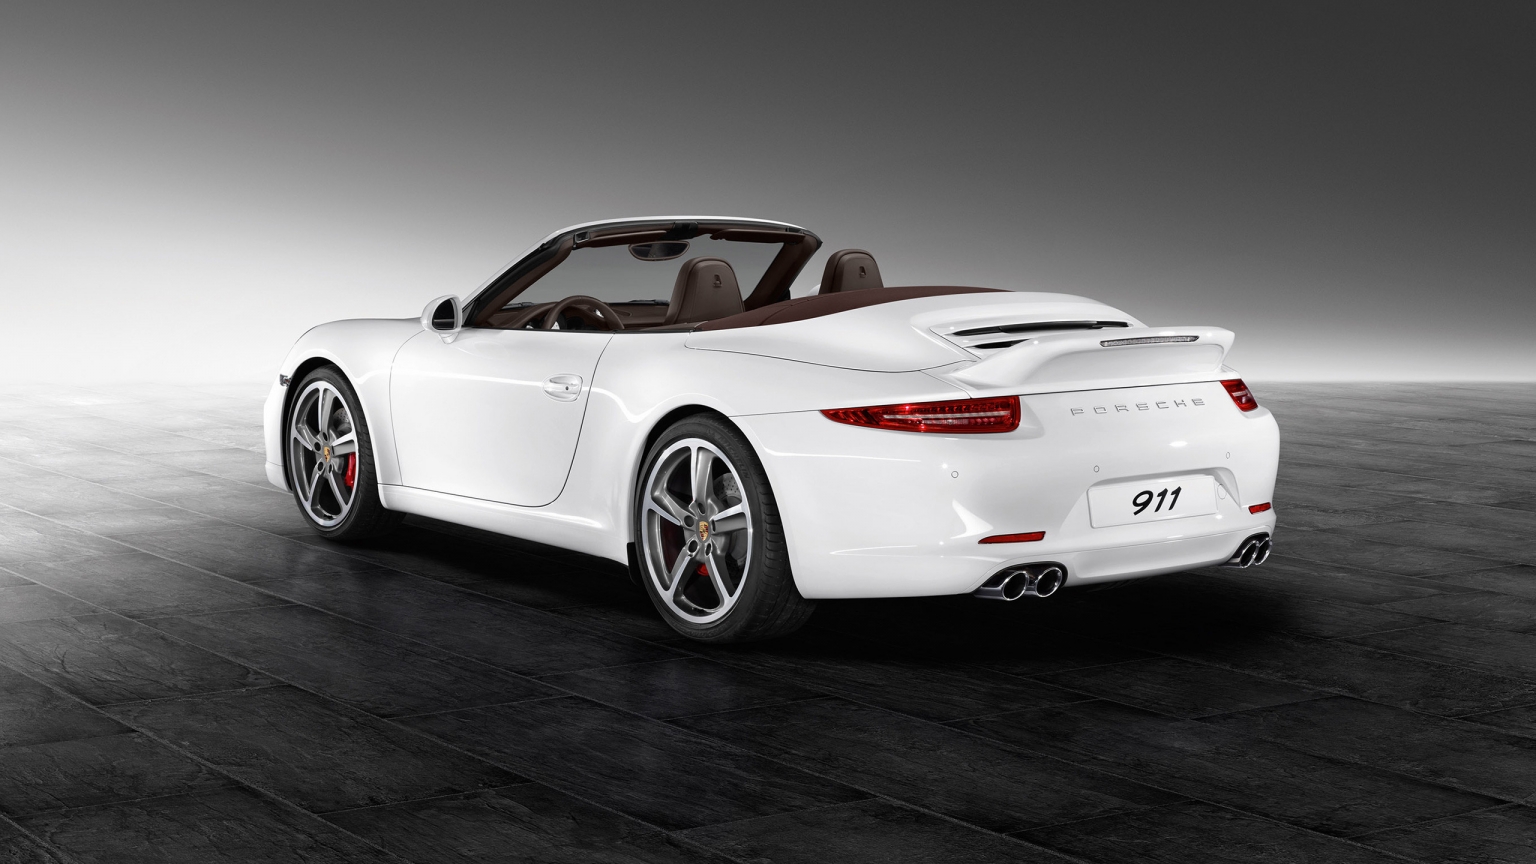 White Porsche 911 Carrera S for 1536 x 864 HDTV resolution